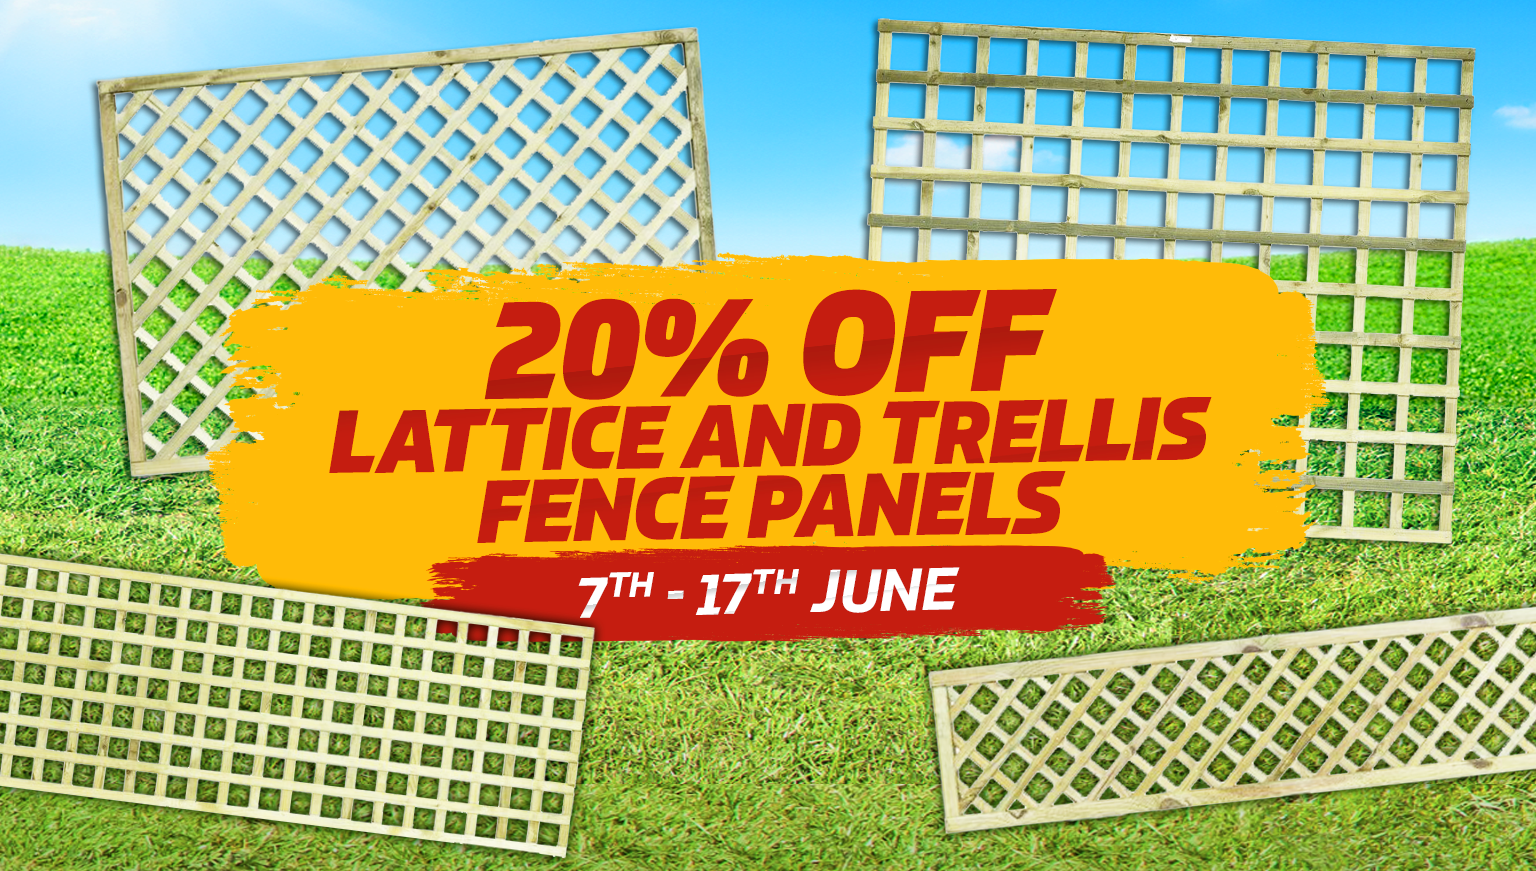 20% off lattice and trellis